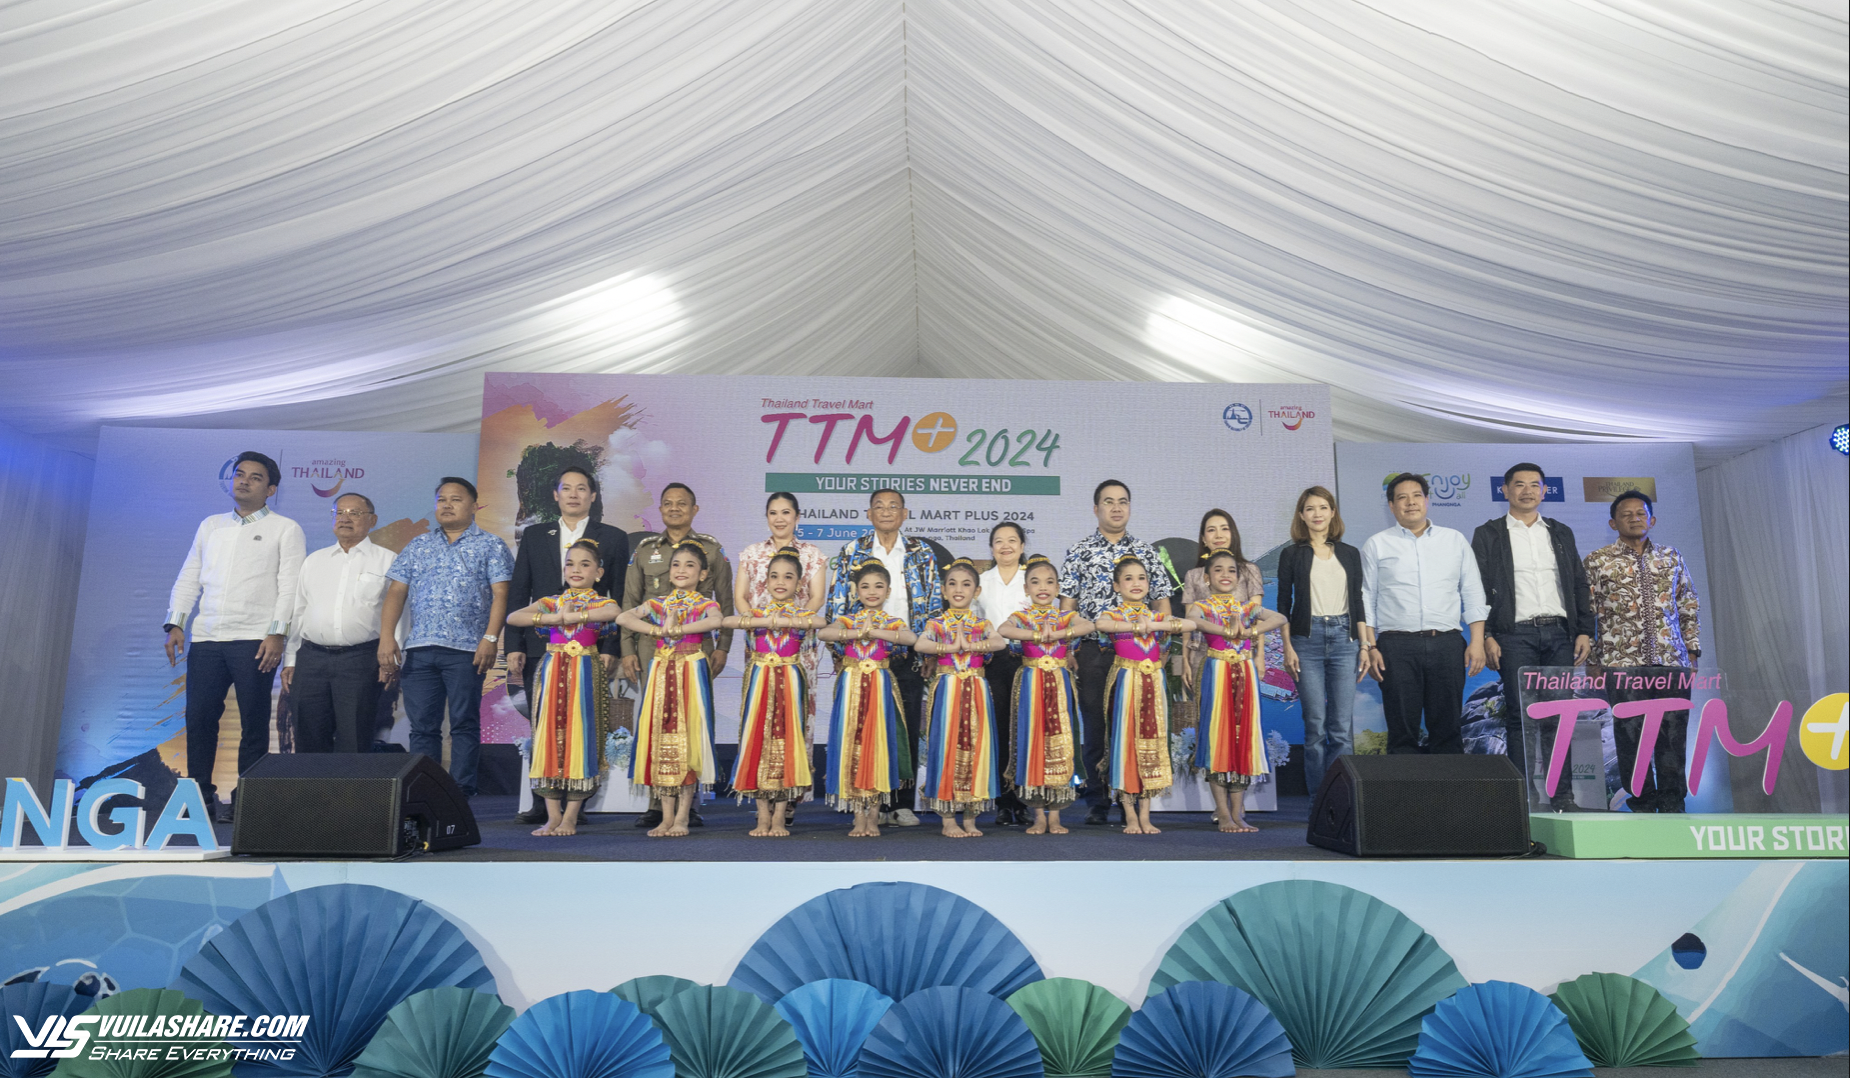 Thái Lan chuyển đổi sang du lịch giá trị cao và bền vững- Ảnh 1.